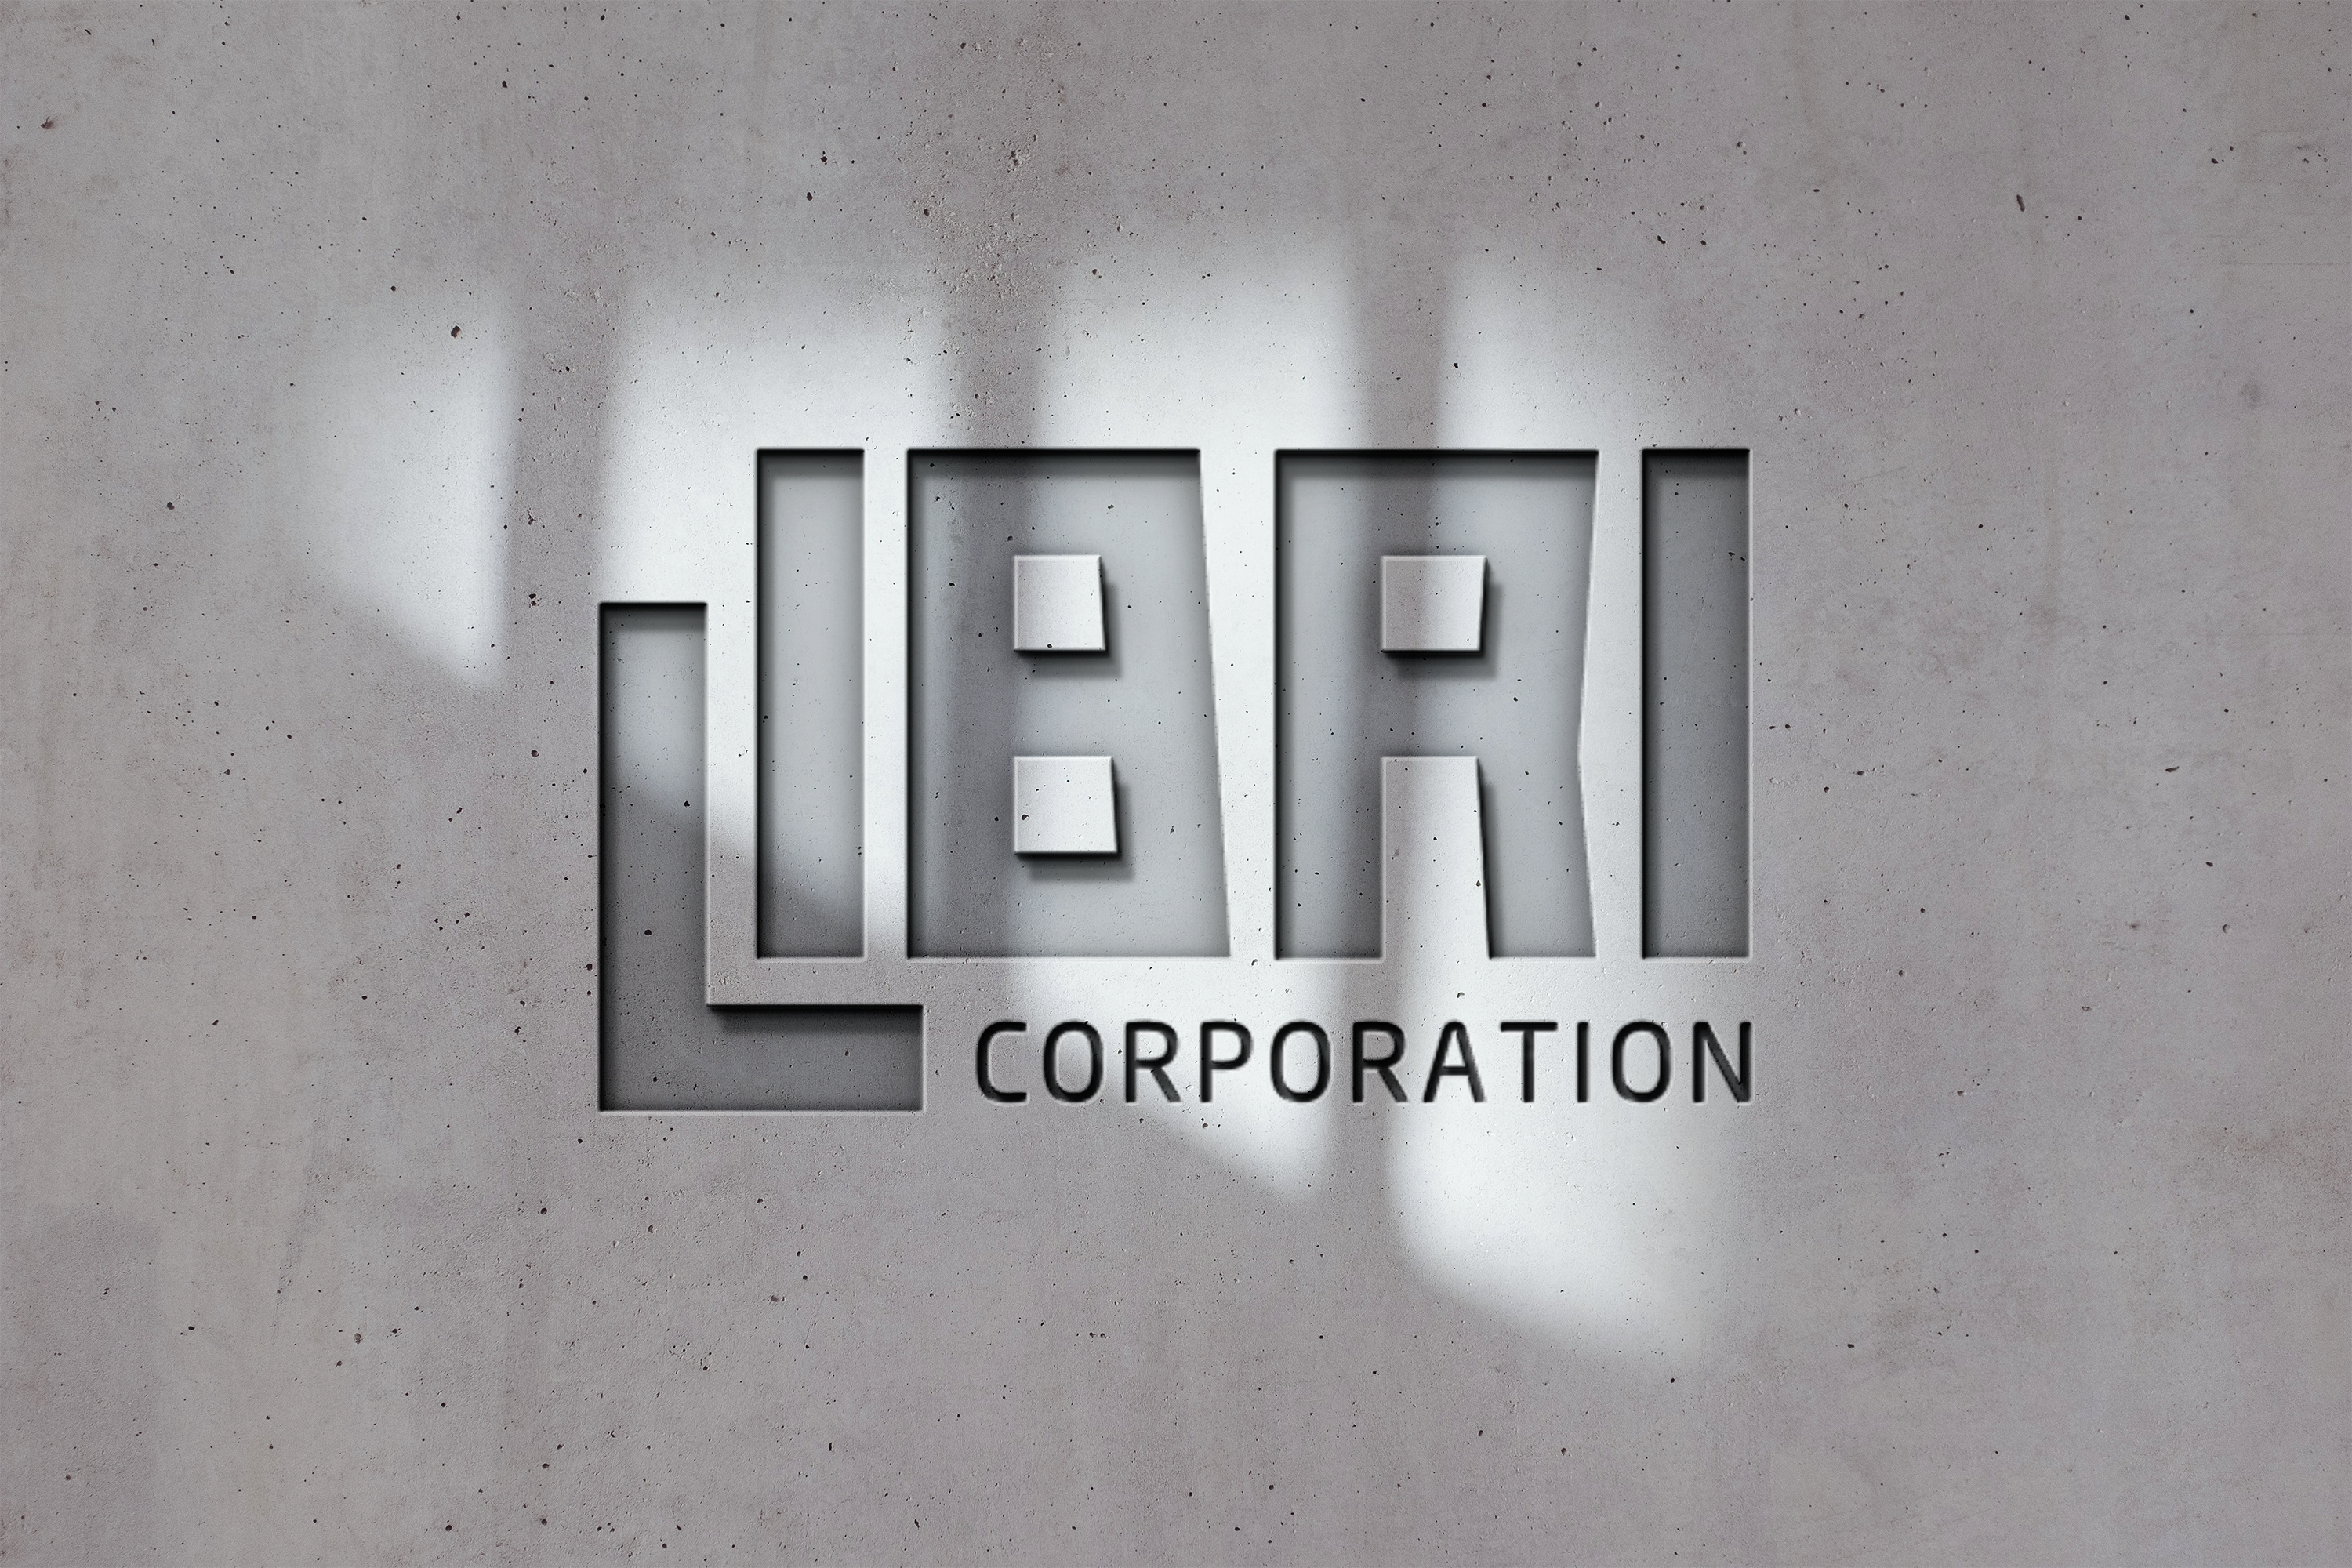 Libri Corporation